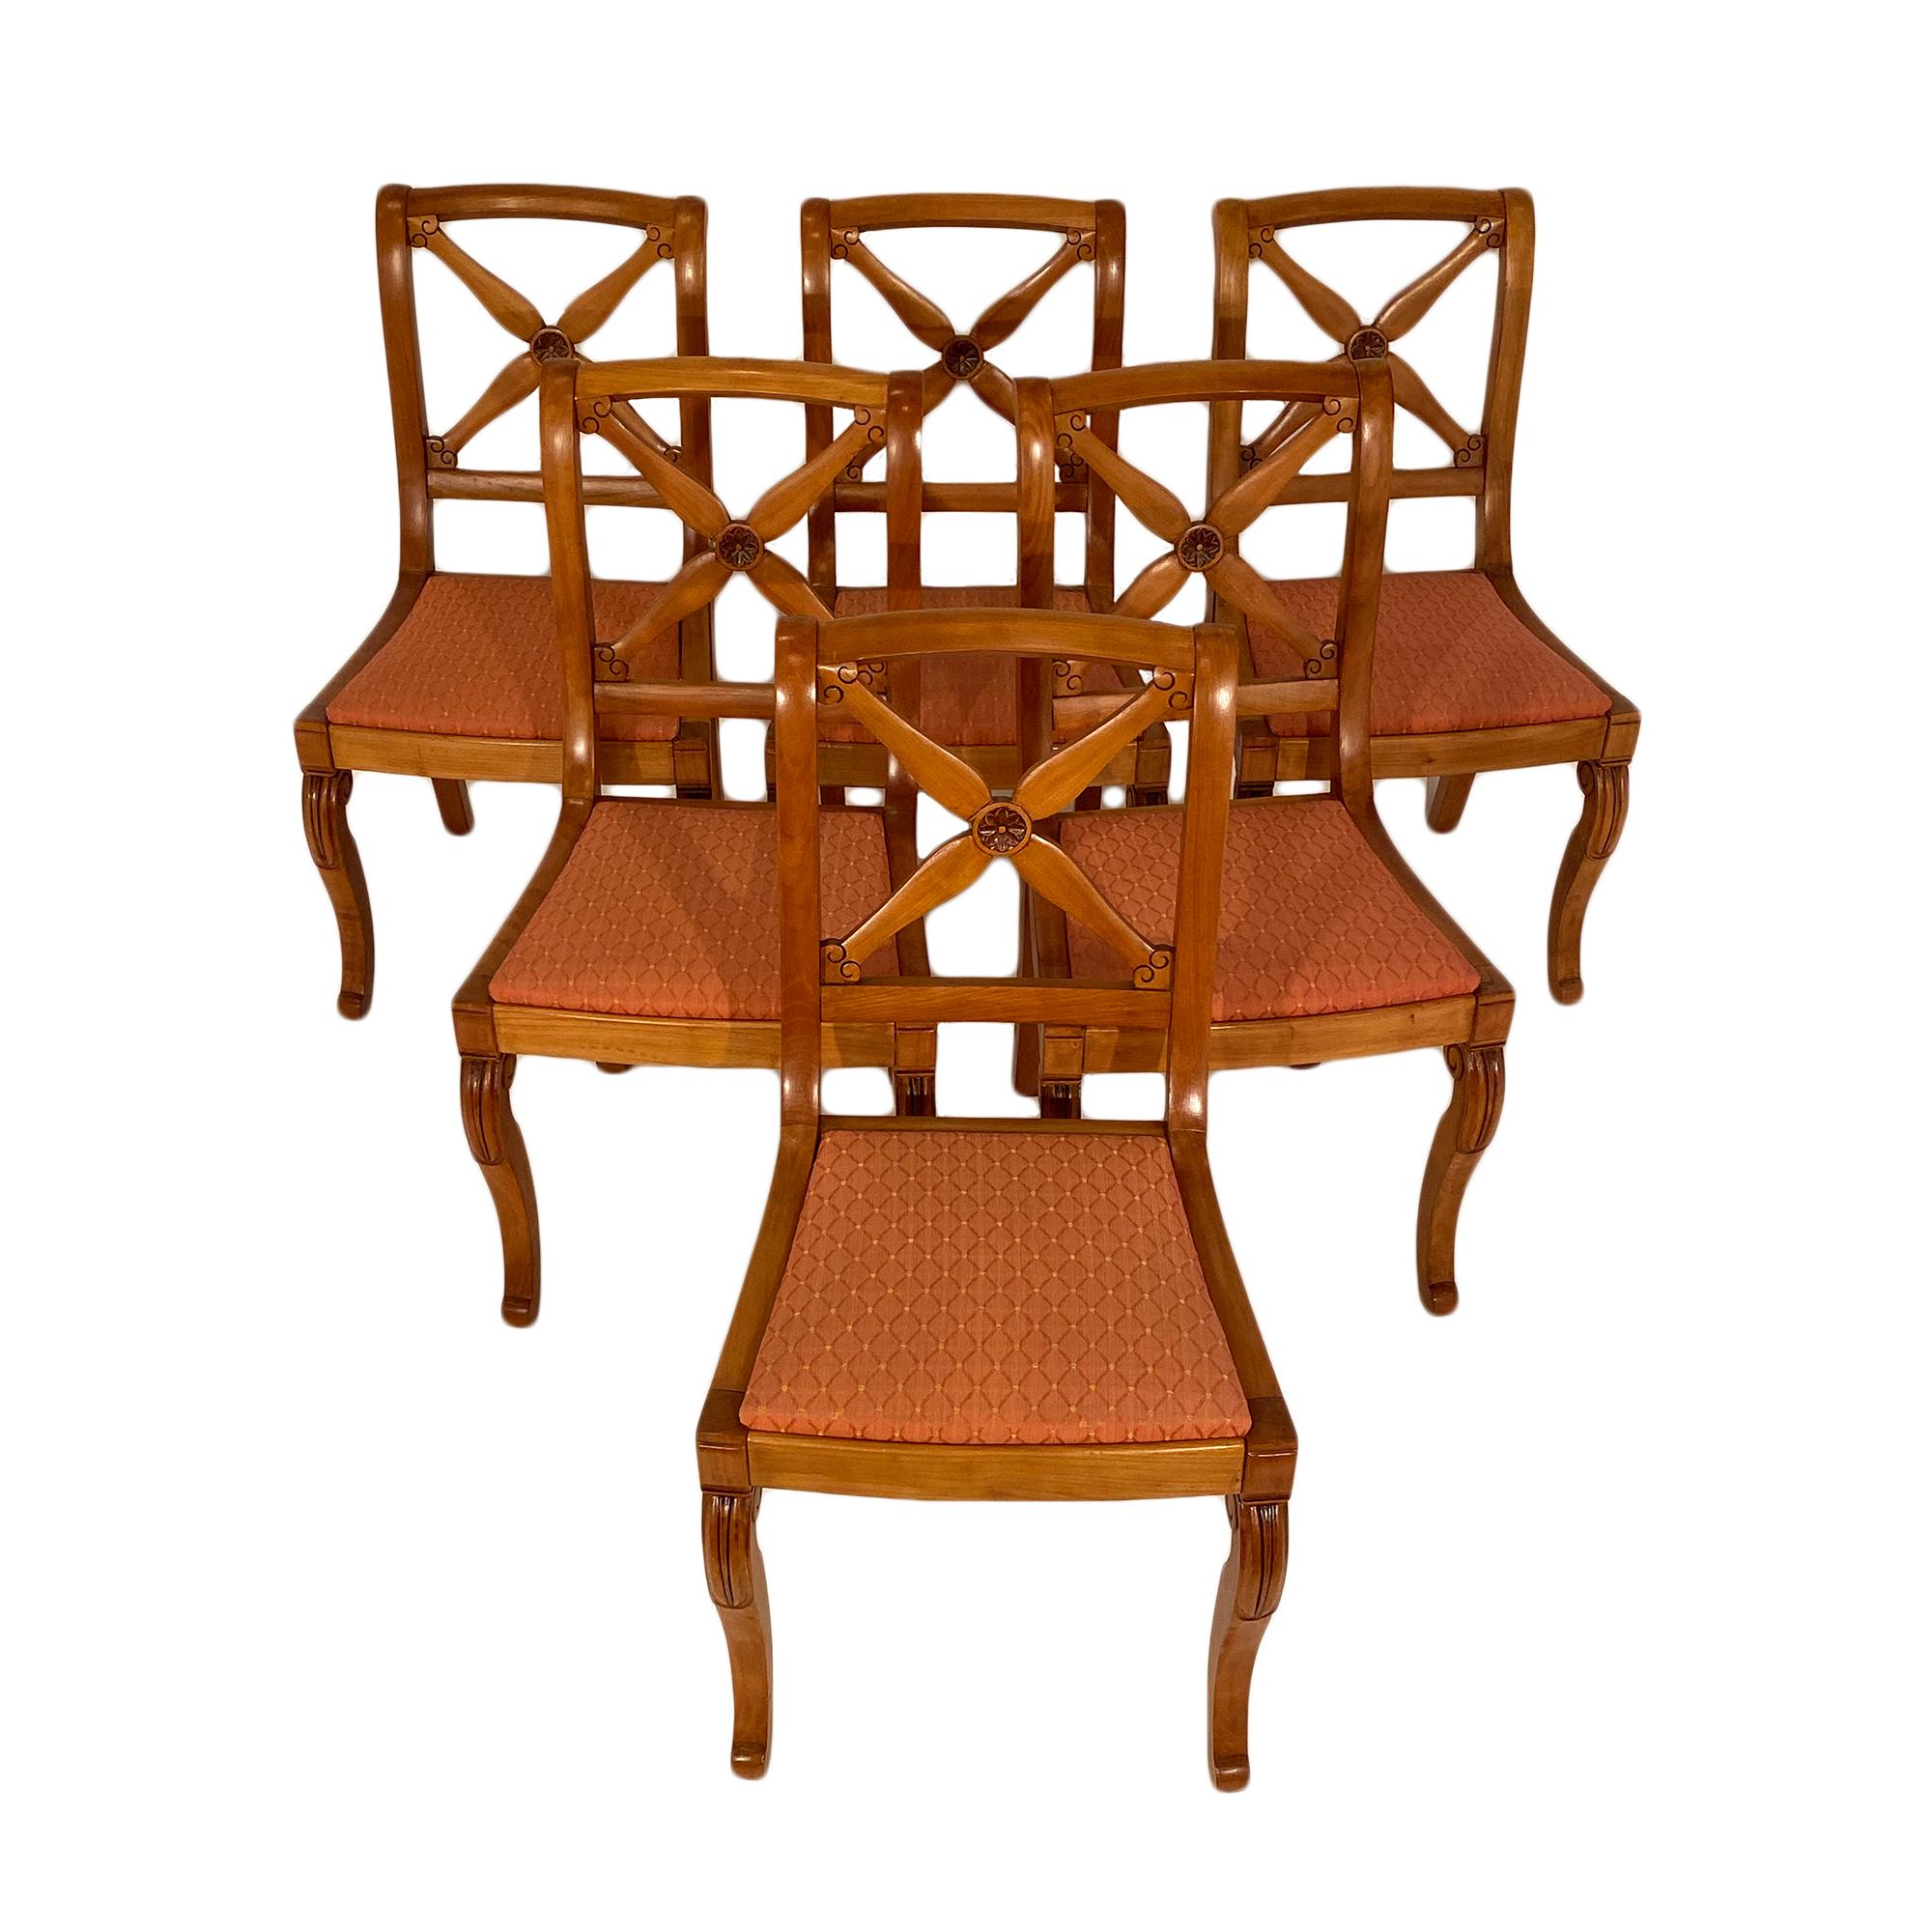 Französische Restaurations-Esszimmerstühle mit zwei zusätzlichen Sesseln. Alle sind aus handgeschnitztem Kirschholz mit sehr stabilen Rahmen gefertigt. Sie haben Säbelbeine hinten und Konsolenbeine vorne. Die geöffnete Rückseite ist mit